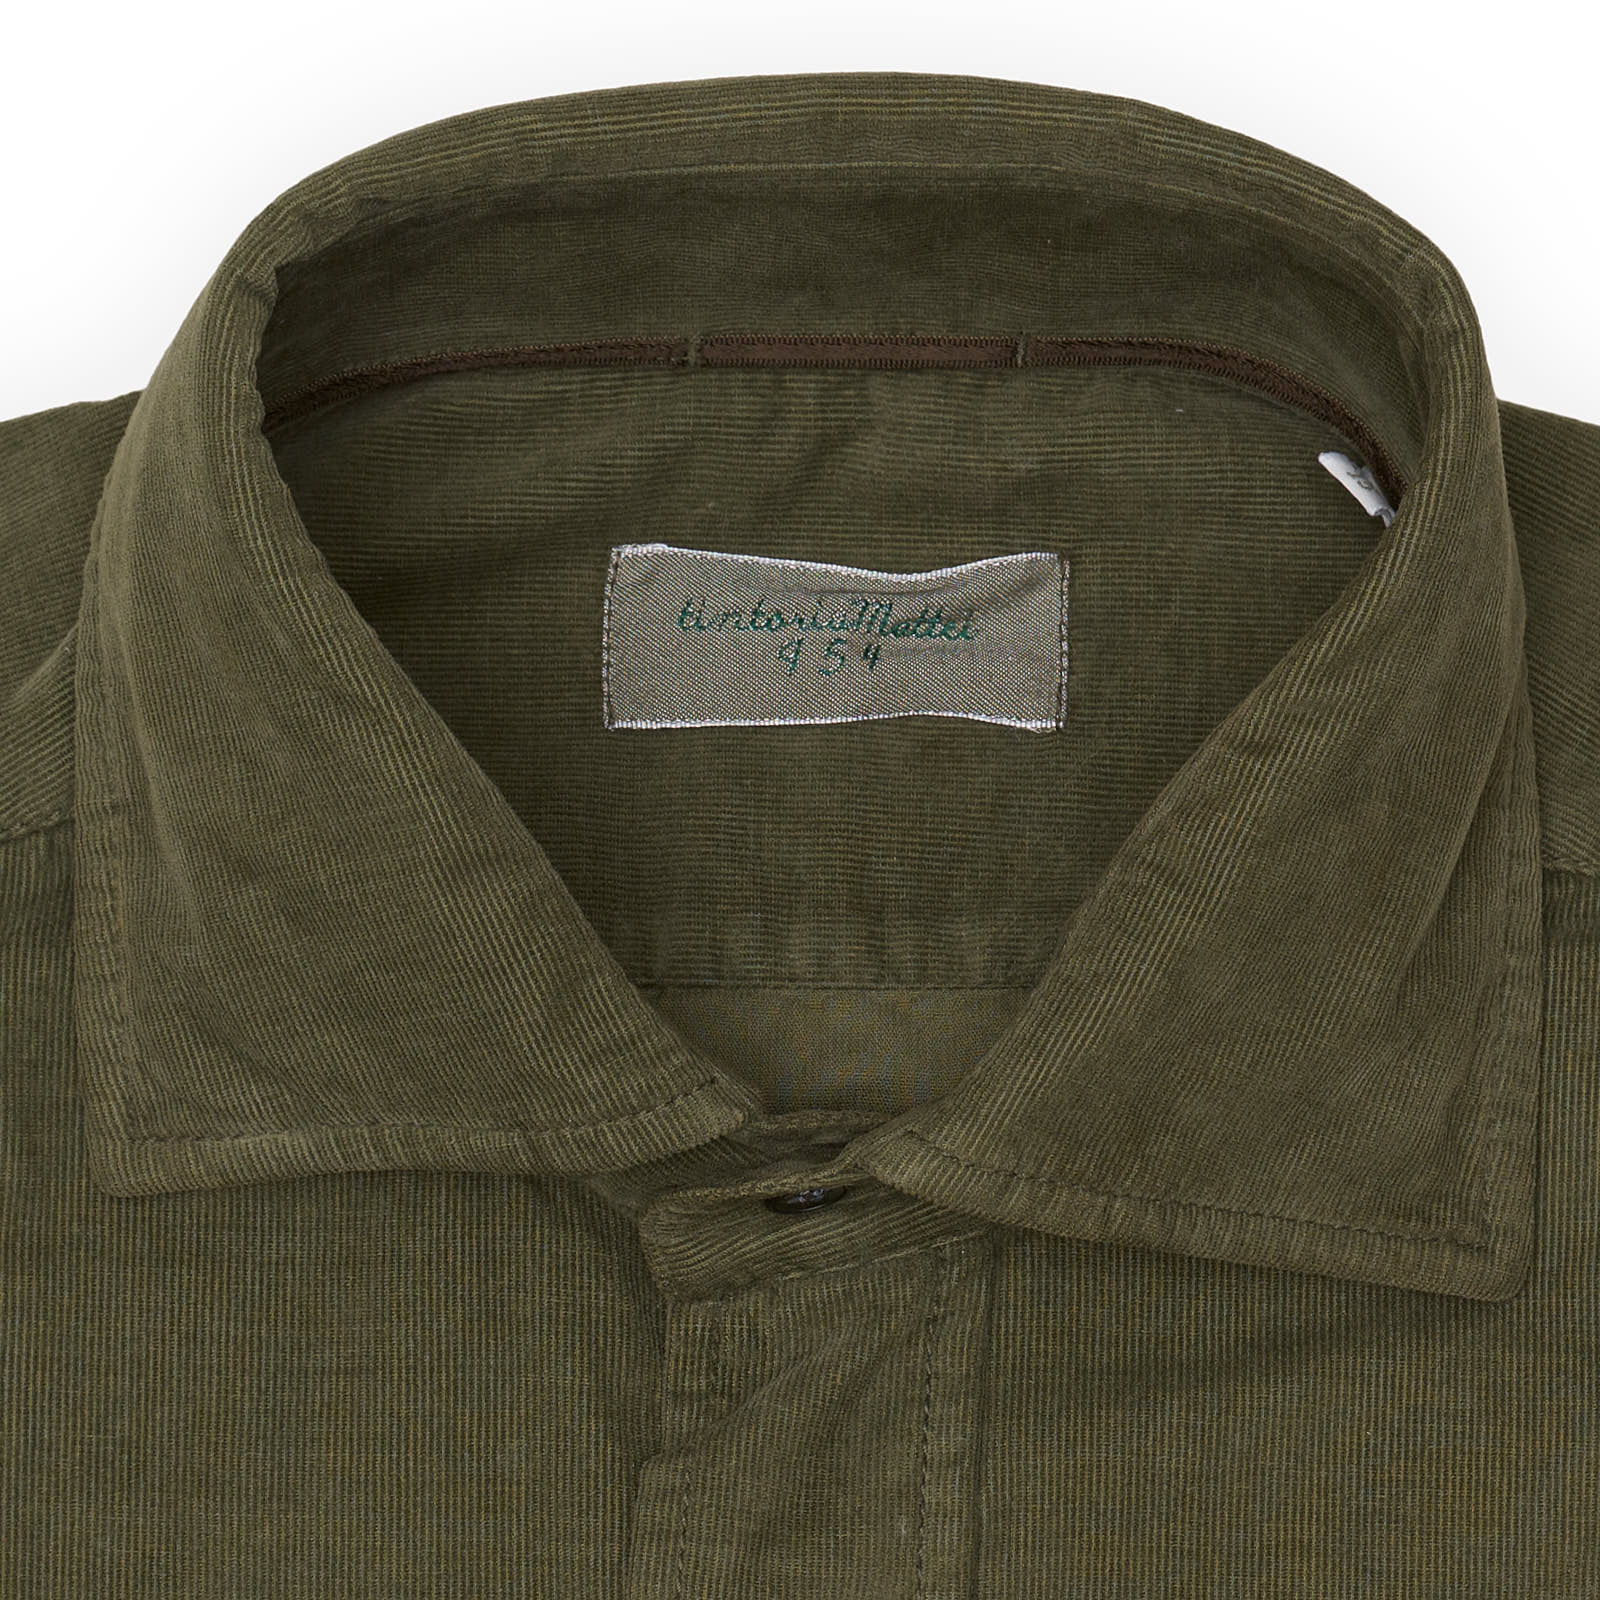 TINTORIA MATTEI 954 Olive Corduroy Cotton-Elastane Shirt EU 38 NEW US 15